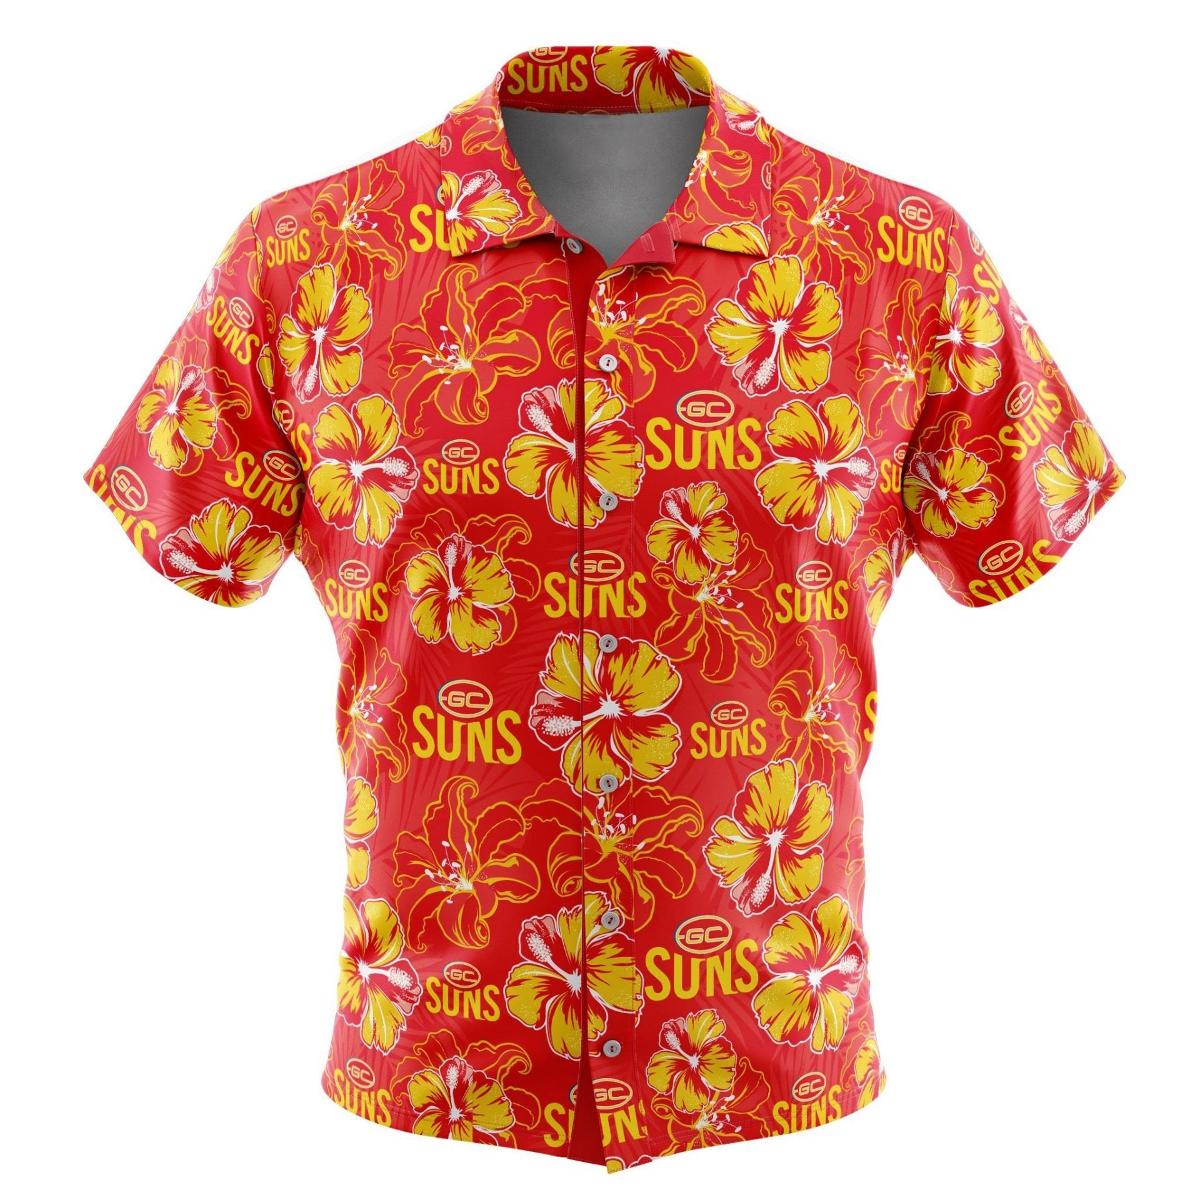 Afl Gold Coast Suns Football Team Since 2009 Vintage Hawaiian Shirt For Fans